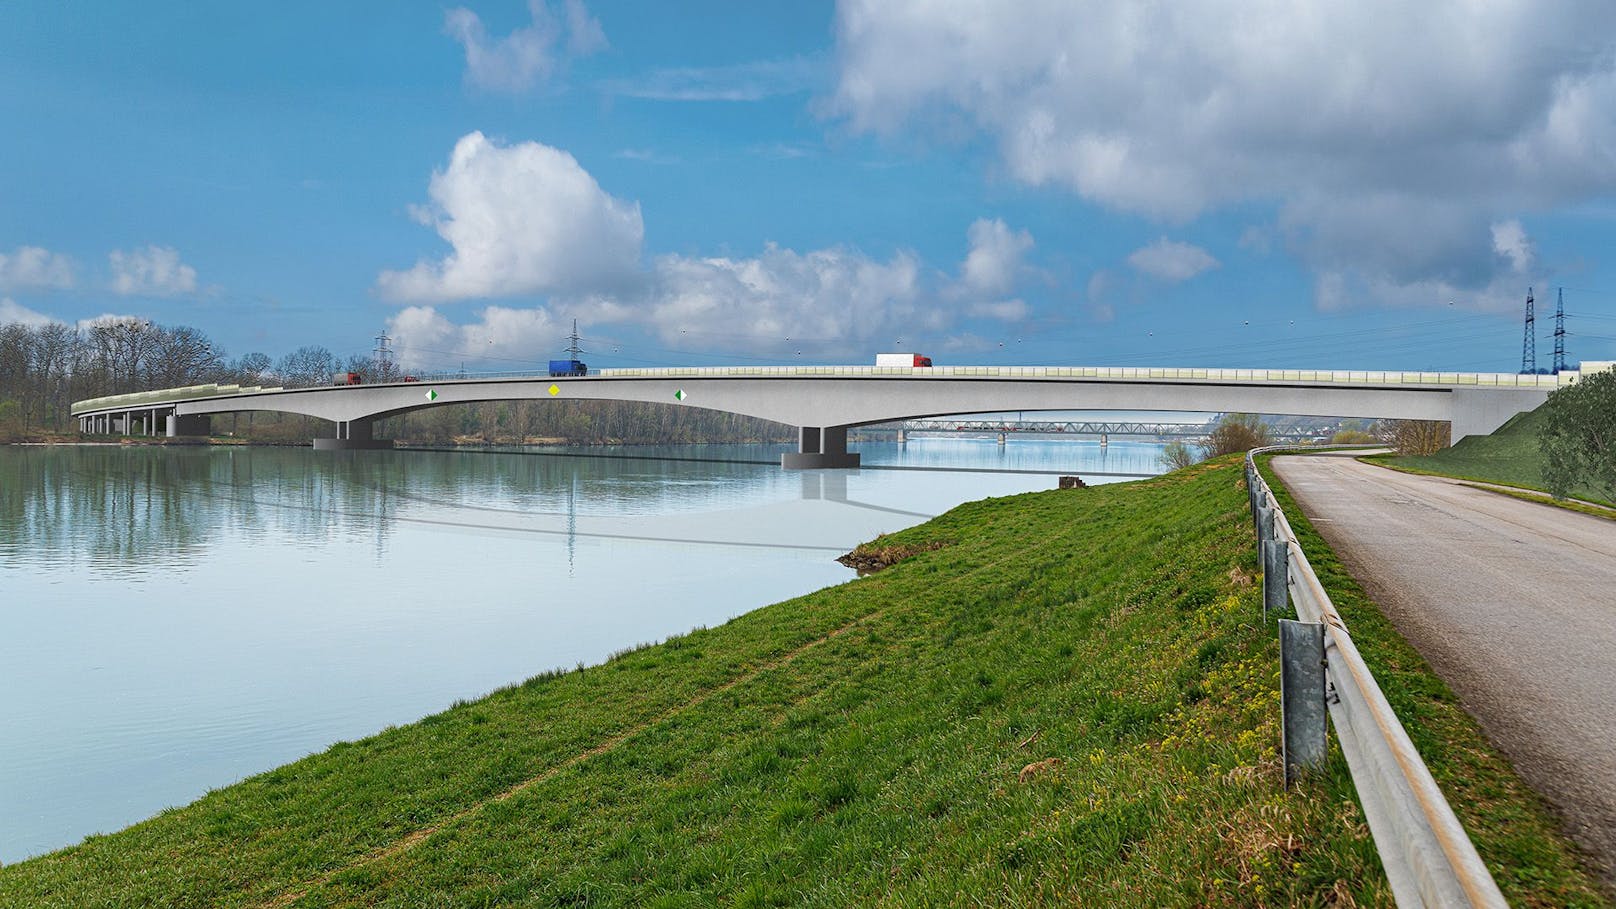 Positiver UVP-Bescheid für Neubau von Donaubrücke